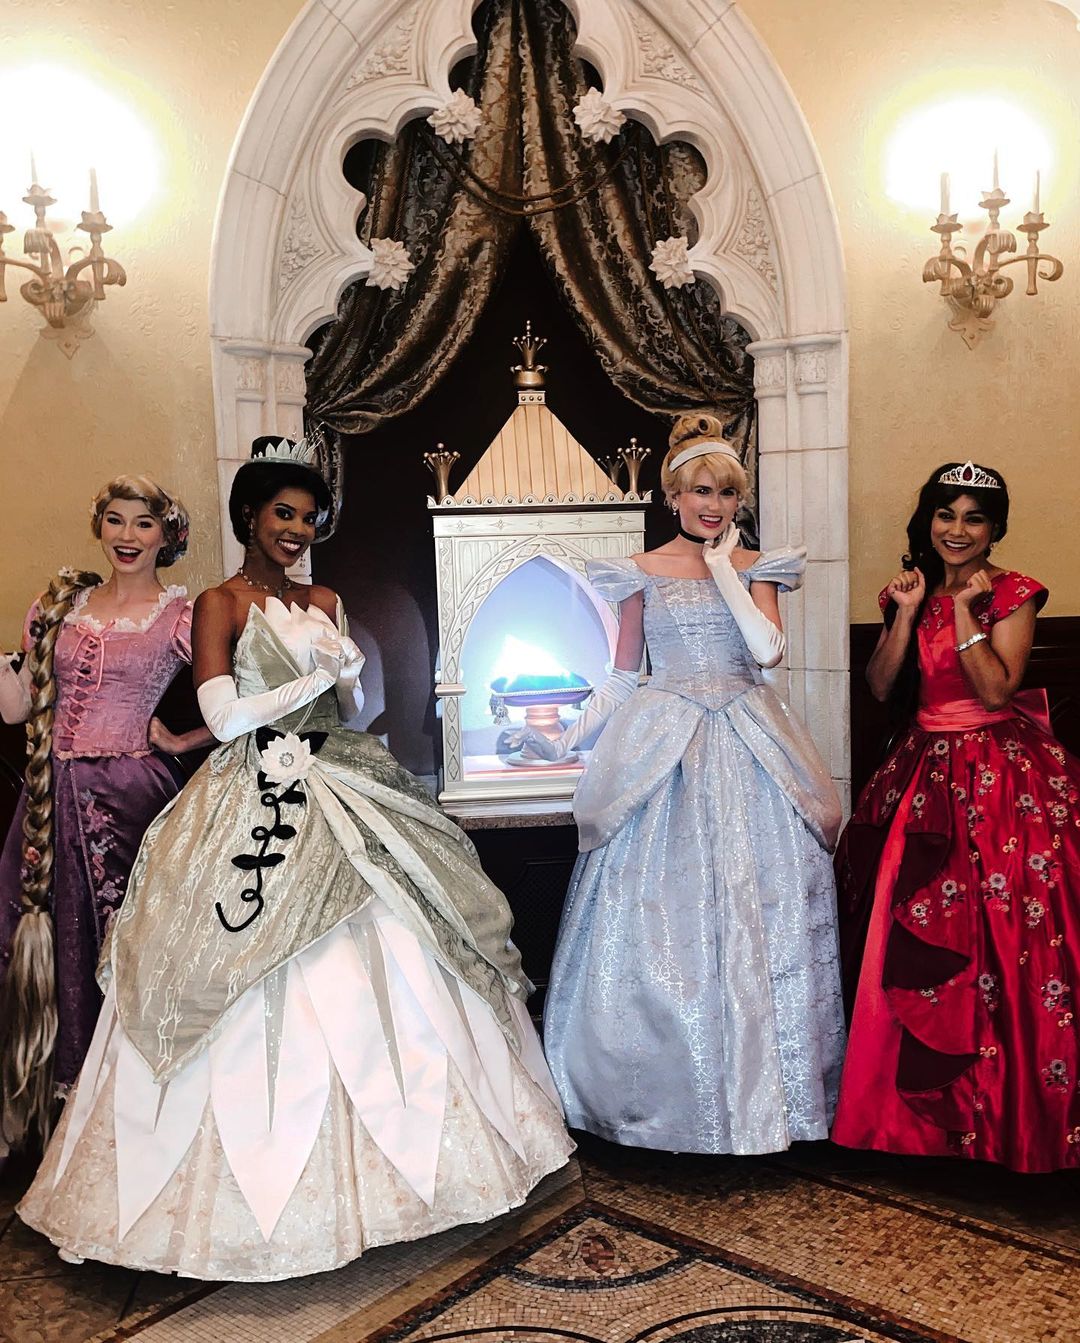 Princess Fairy Tale Hall - Treffen Sie verschiedene Prinzessinnen im magischen Königreich